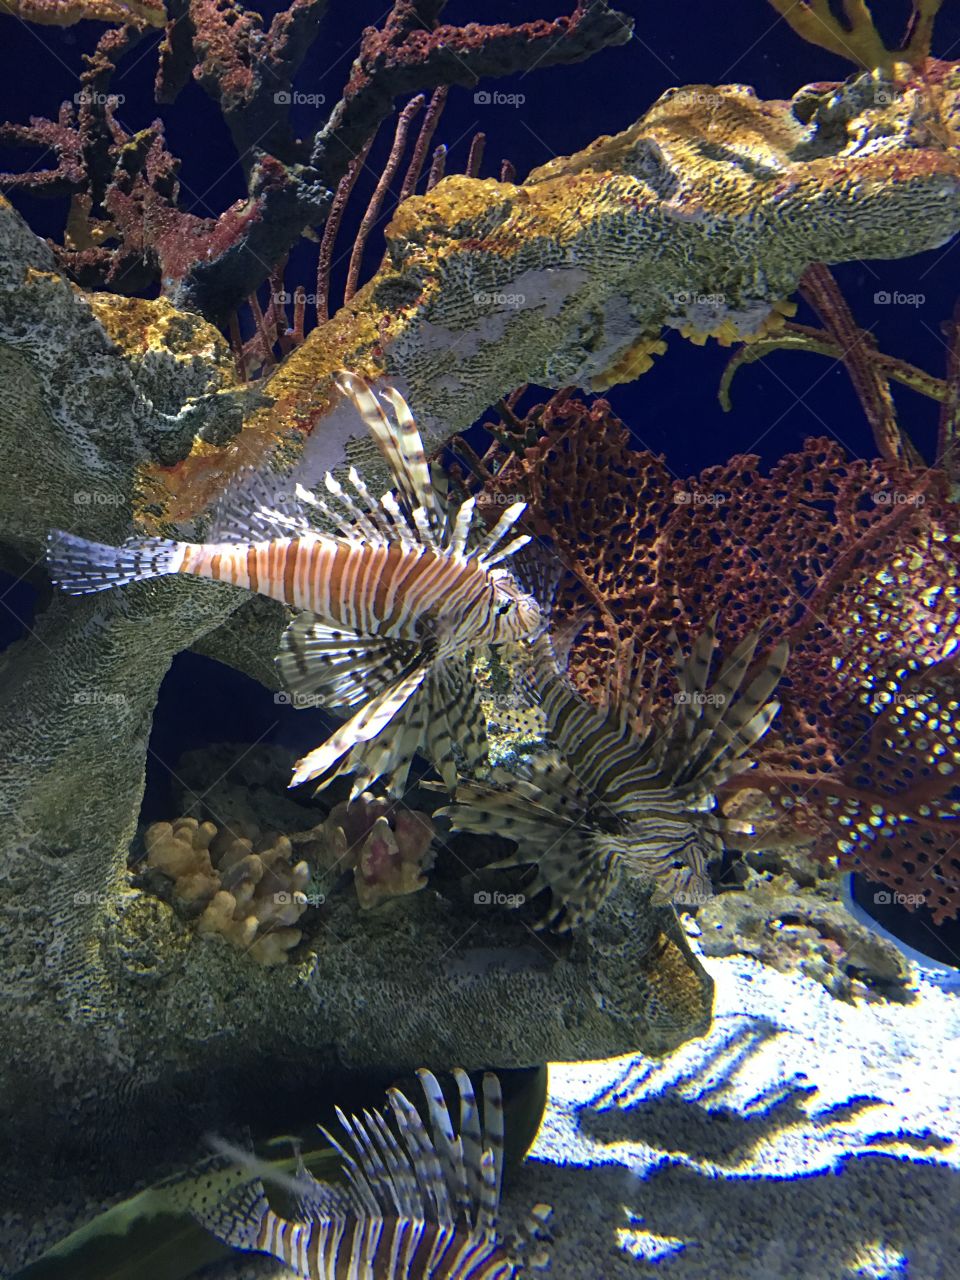 Lion fish at Georgia Aquarium 